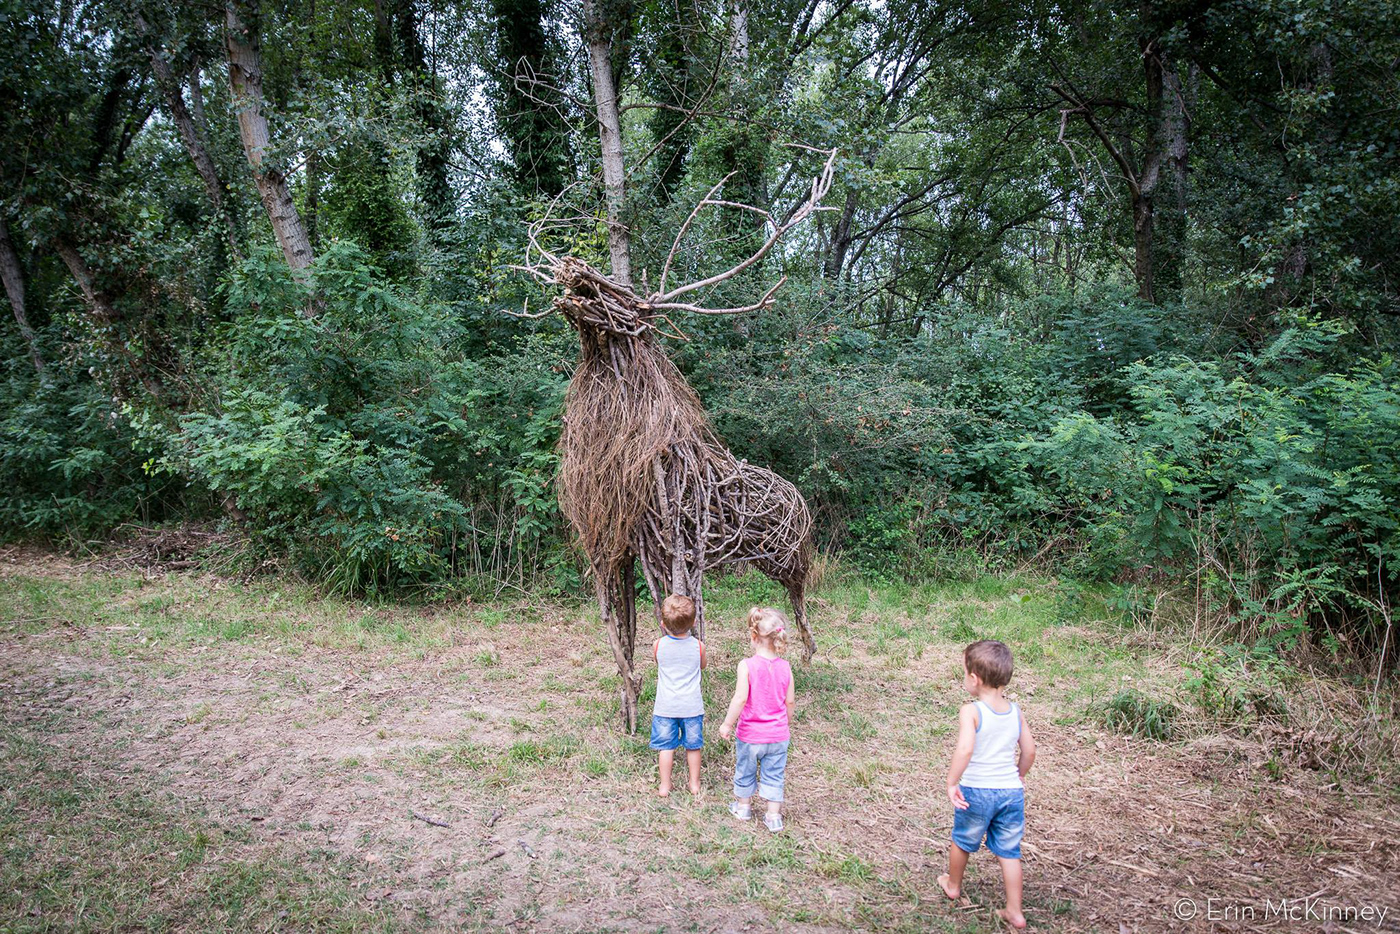 land art art sculpture installation Nature animal deer festival wood